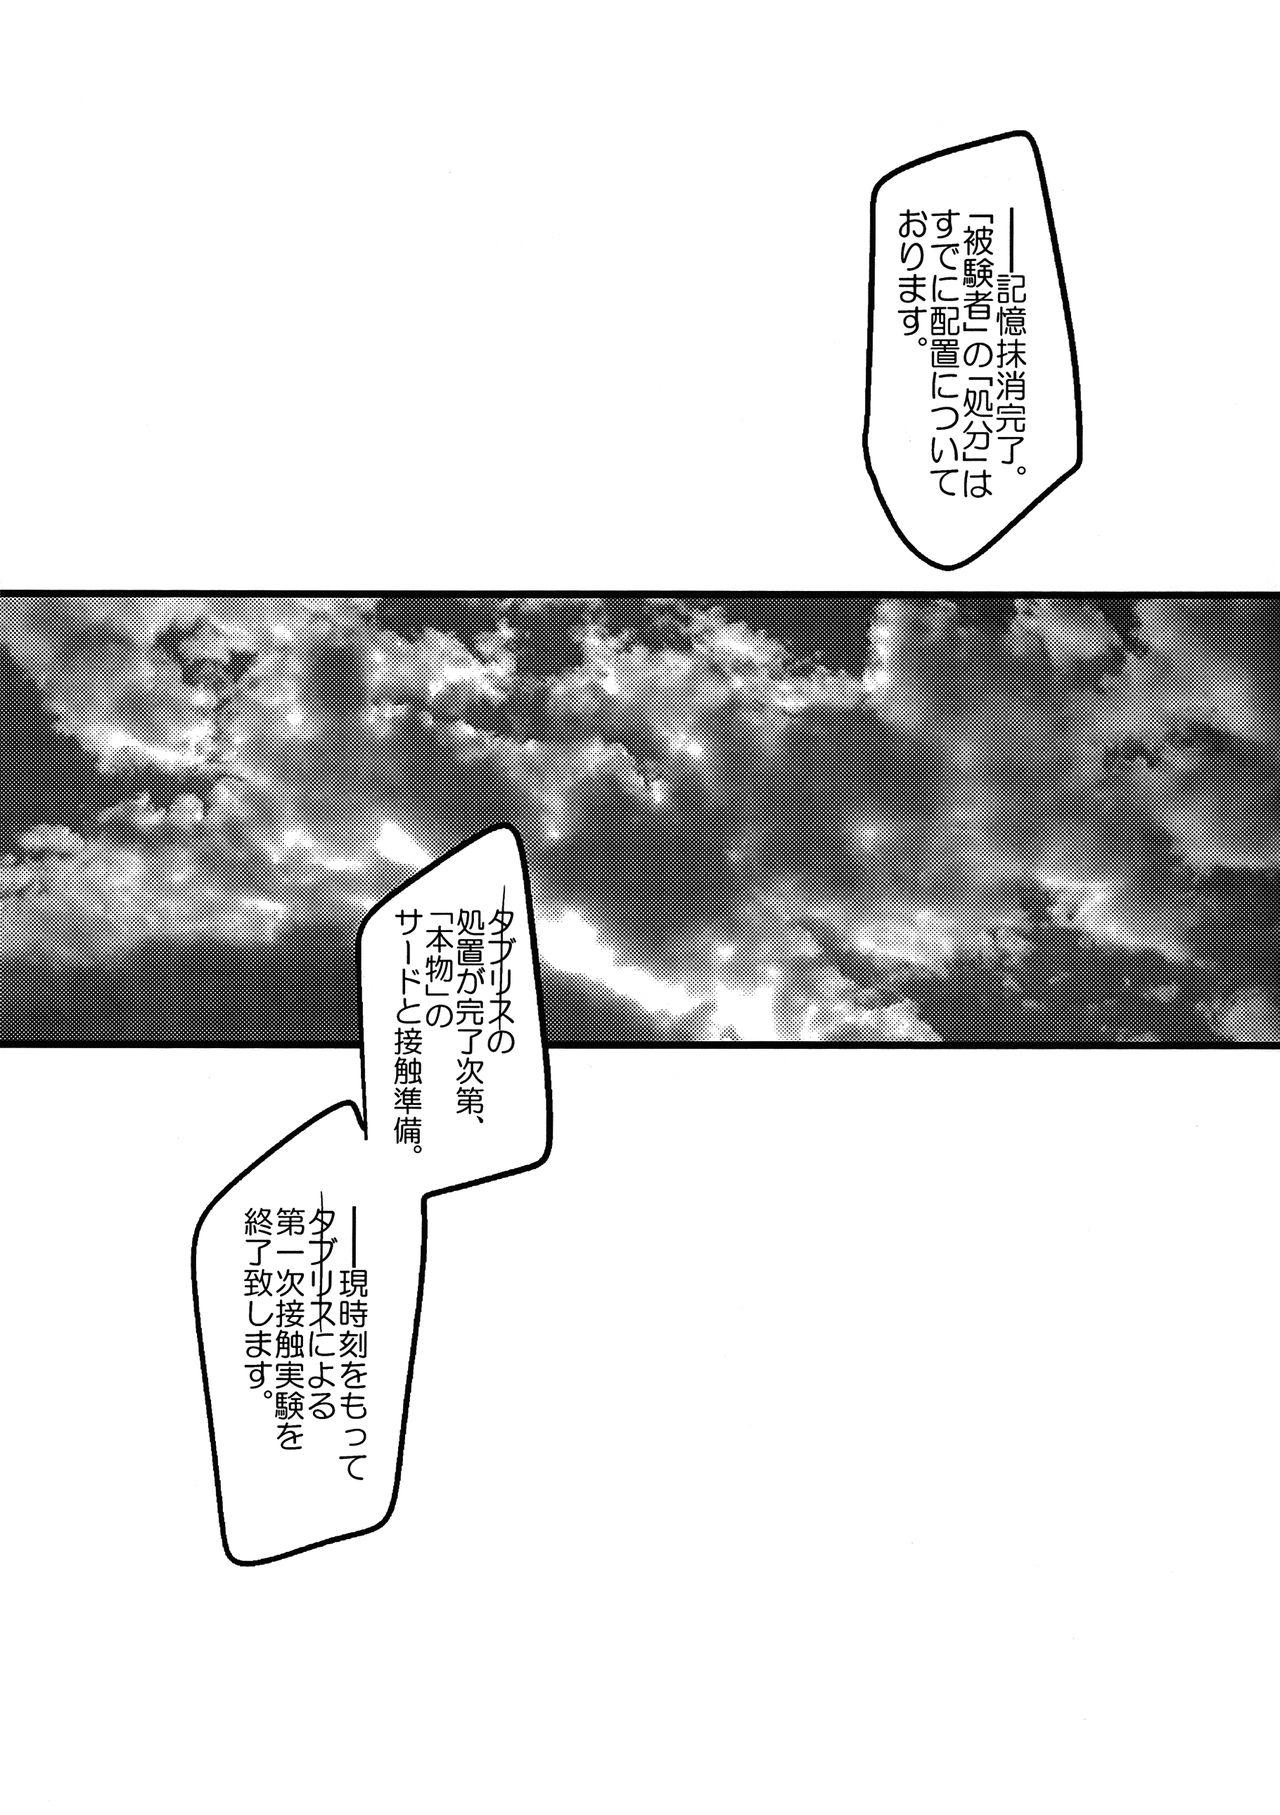 Wet Ore no Koto o Ikari Shinji da to Omoikomu Saimin ni Kakatta Nagisa Kaworu-kun wa Mechamecha Yasashii - Neon genesis evangelion Art - Page 11